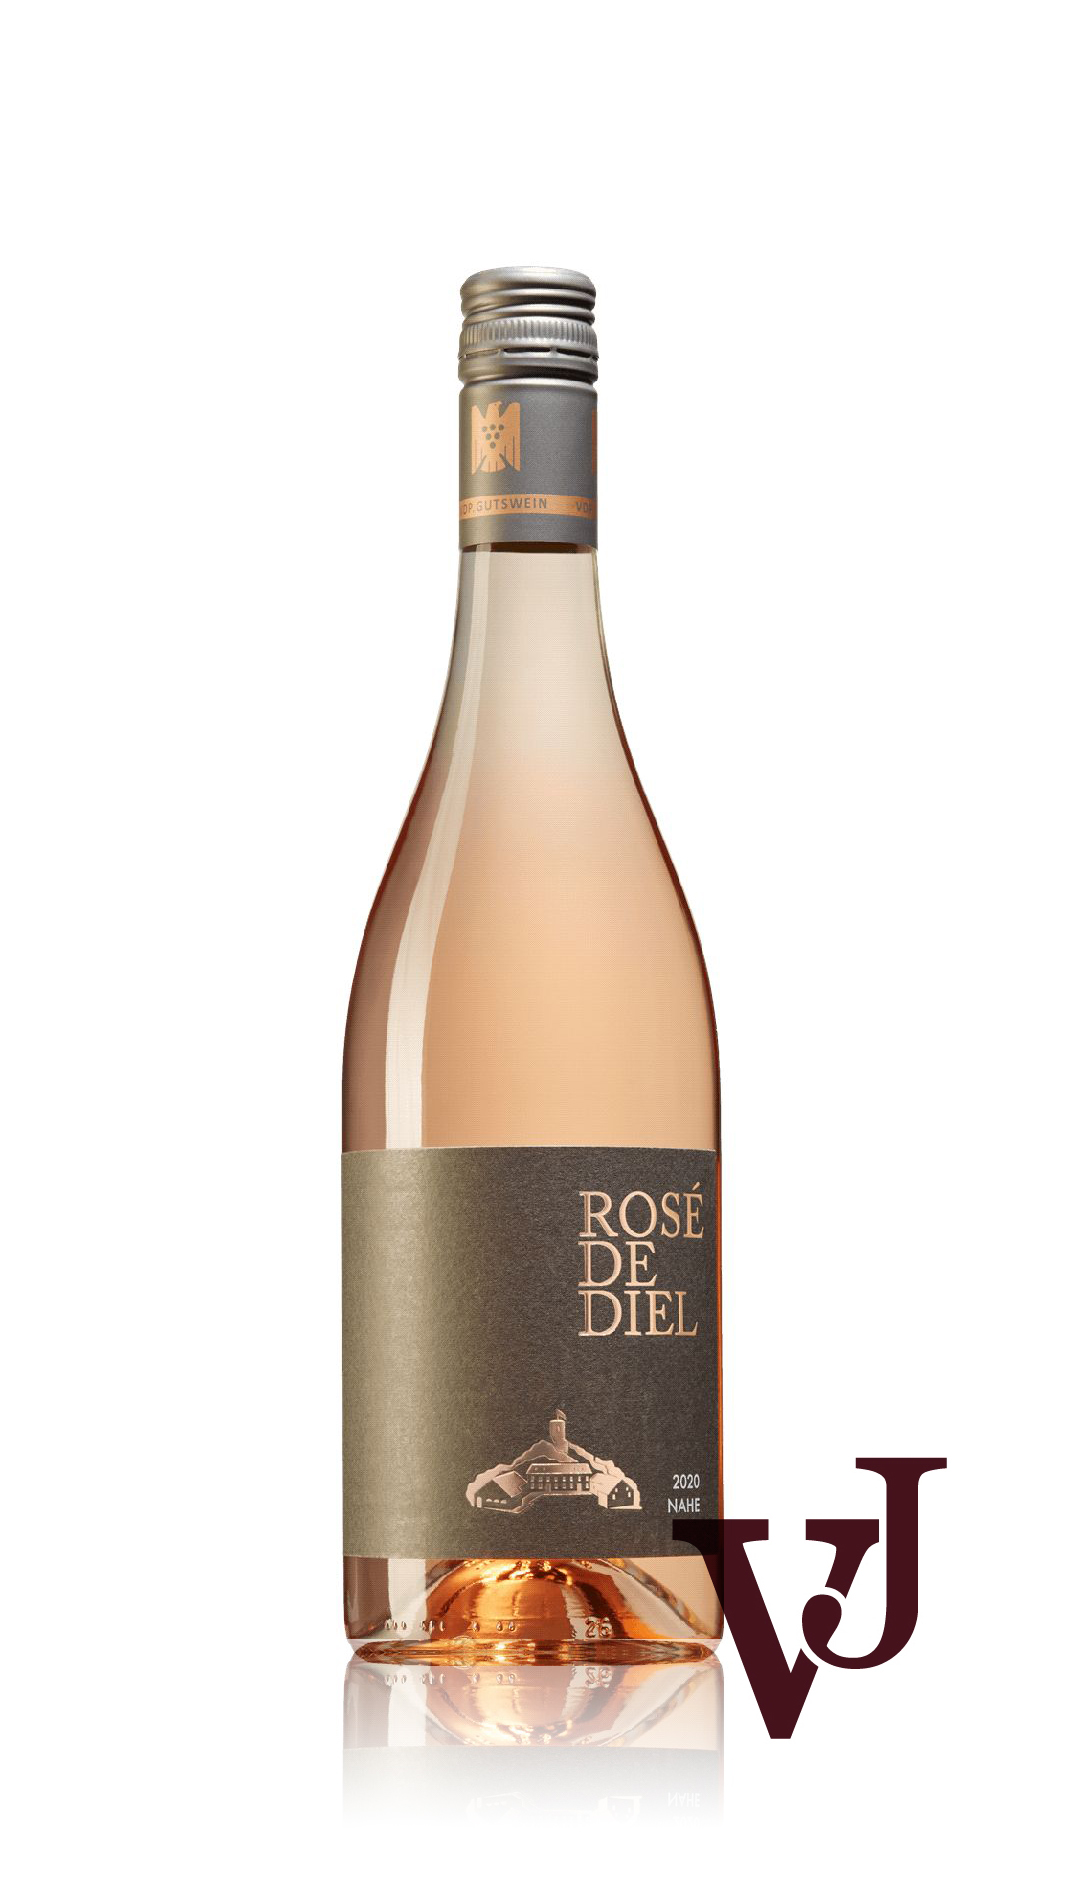 Rosé Vin - Rosé de Diel artikel nummer 9389701 från producenten Schlossgut Diel från området Tyskland